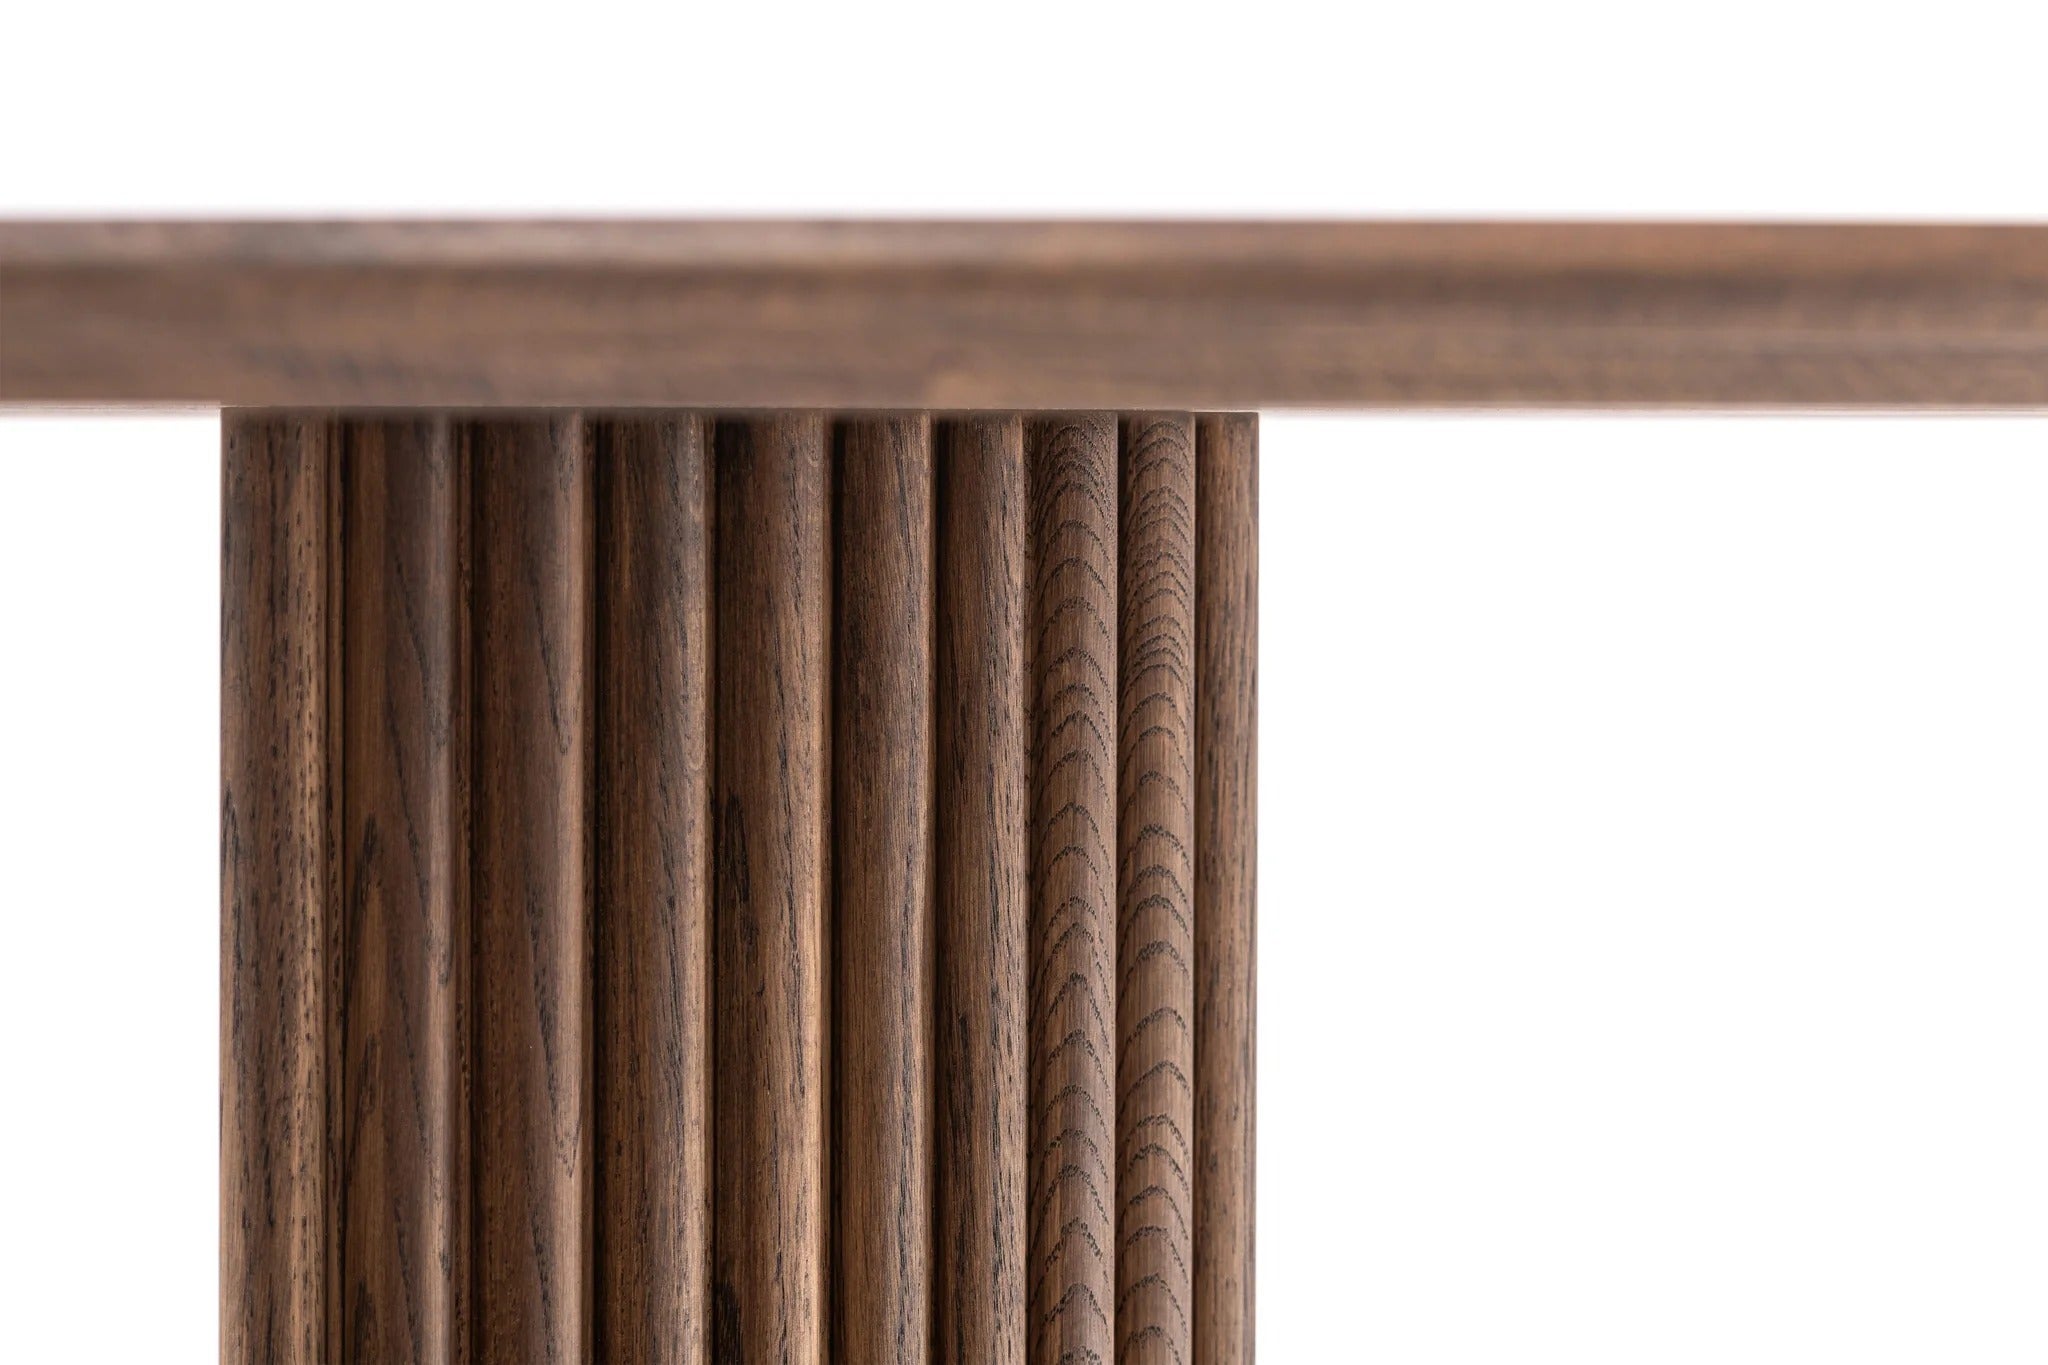 Detailansicht des GROOVE Esstisches, der die robuste Bauweise und die feinen Holzdetails zeigt